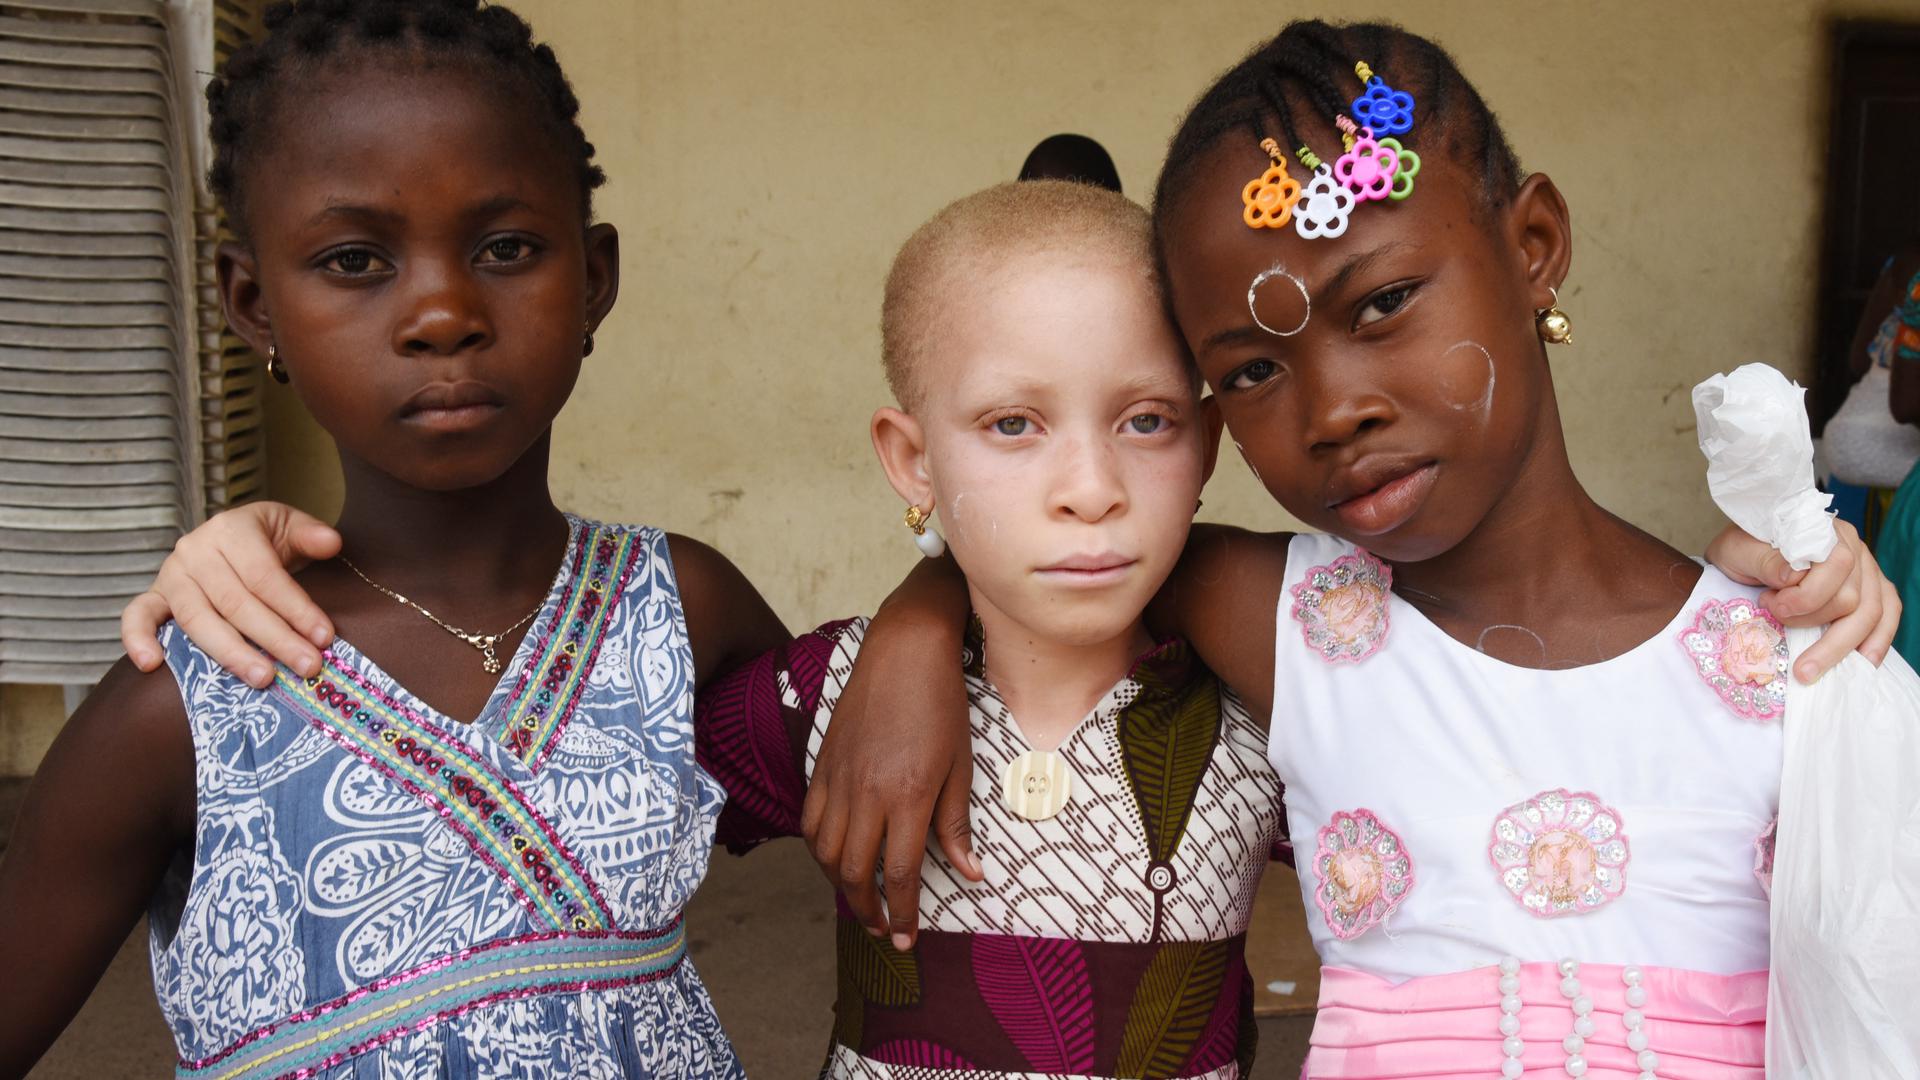 Opfer von Aberglauben: In einigen Regionen Afrikas werden gelegentlich Albino-Kinder entführt oder verstümmelt, weil ihre Gliedmaßen als Bestandteile einer angeblichen „Zaubermedizin“ Wunder bewirken und Glück bringen sollen. 